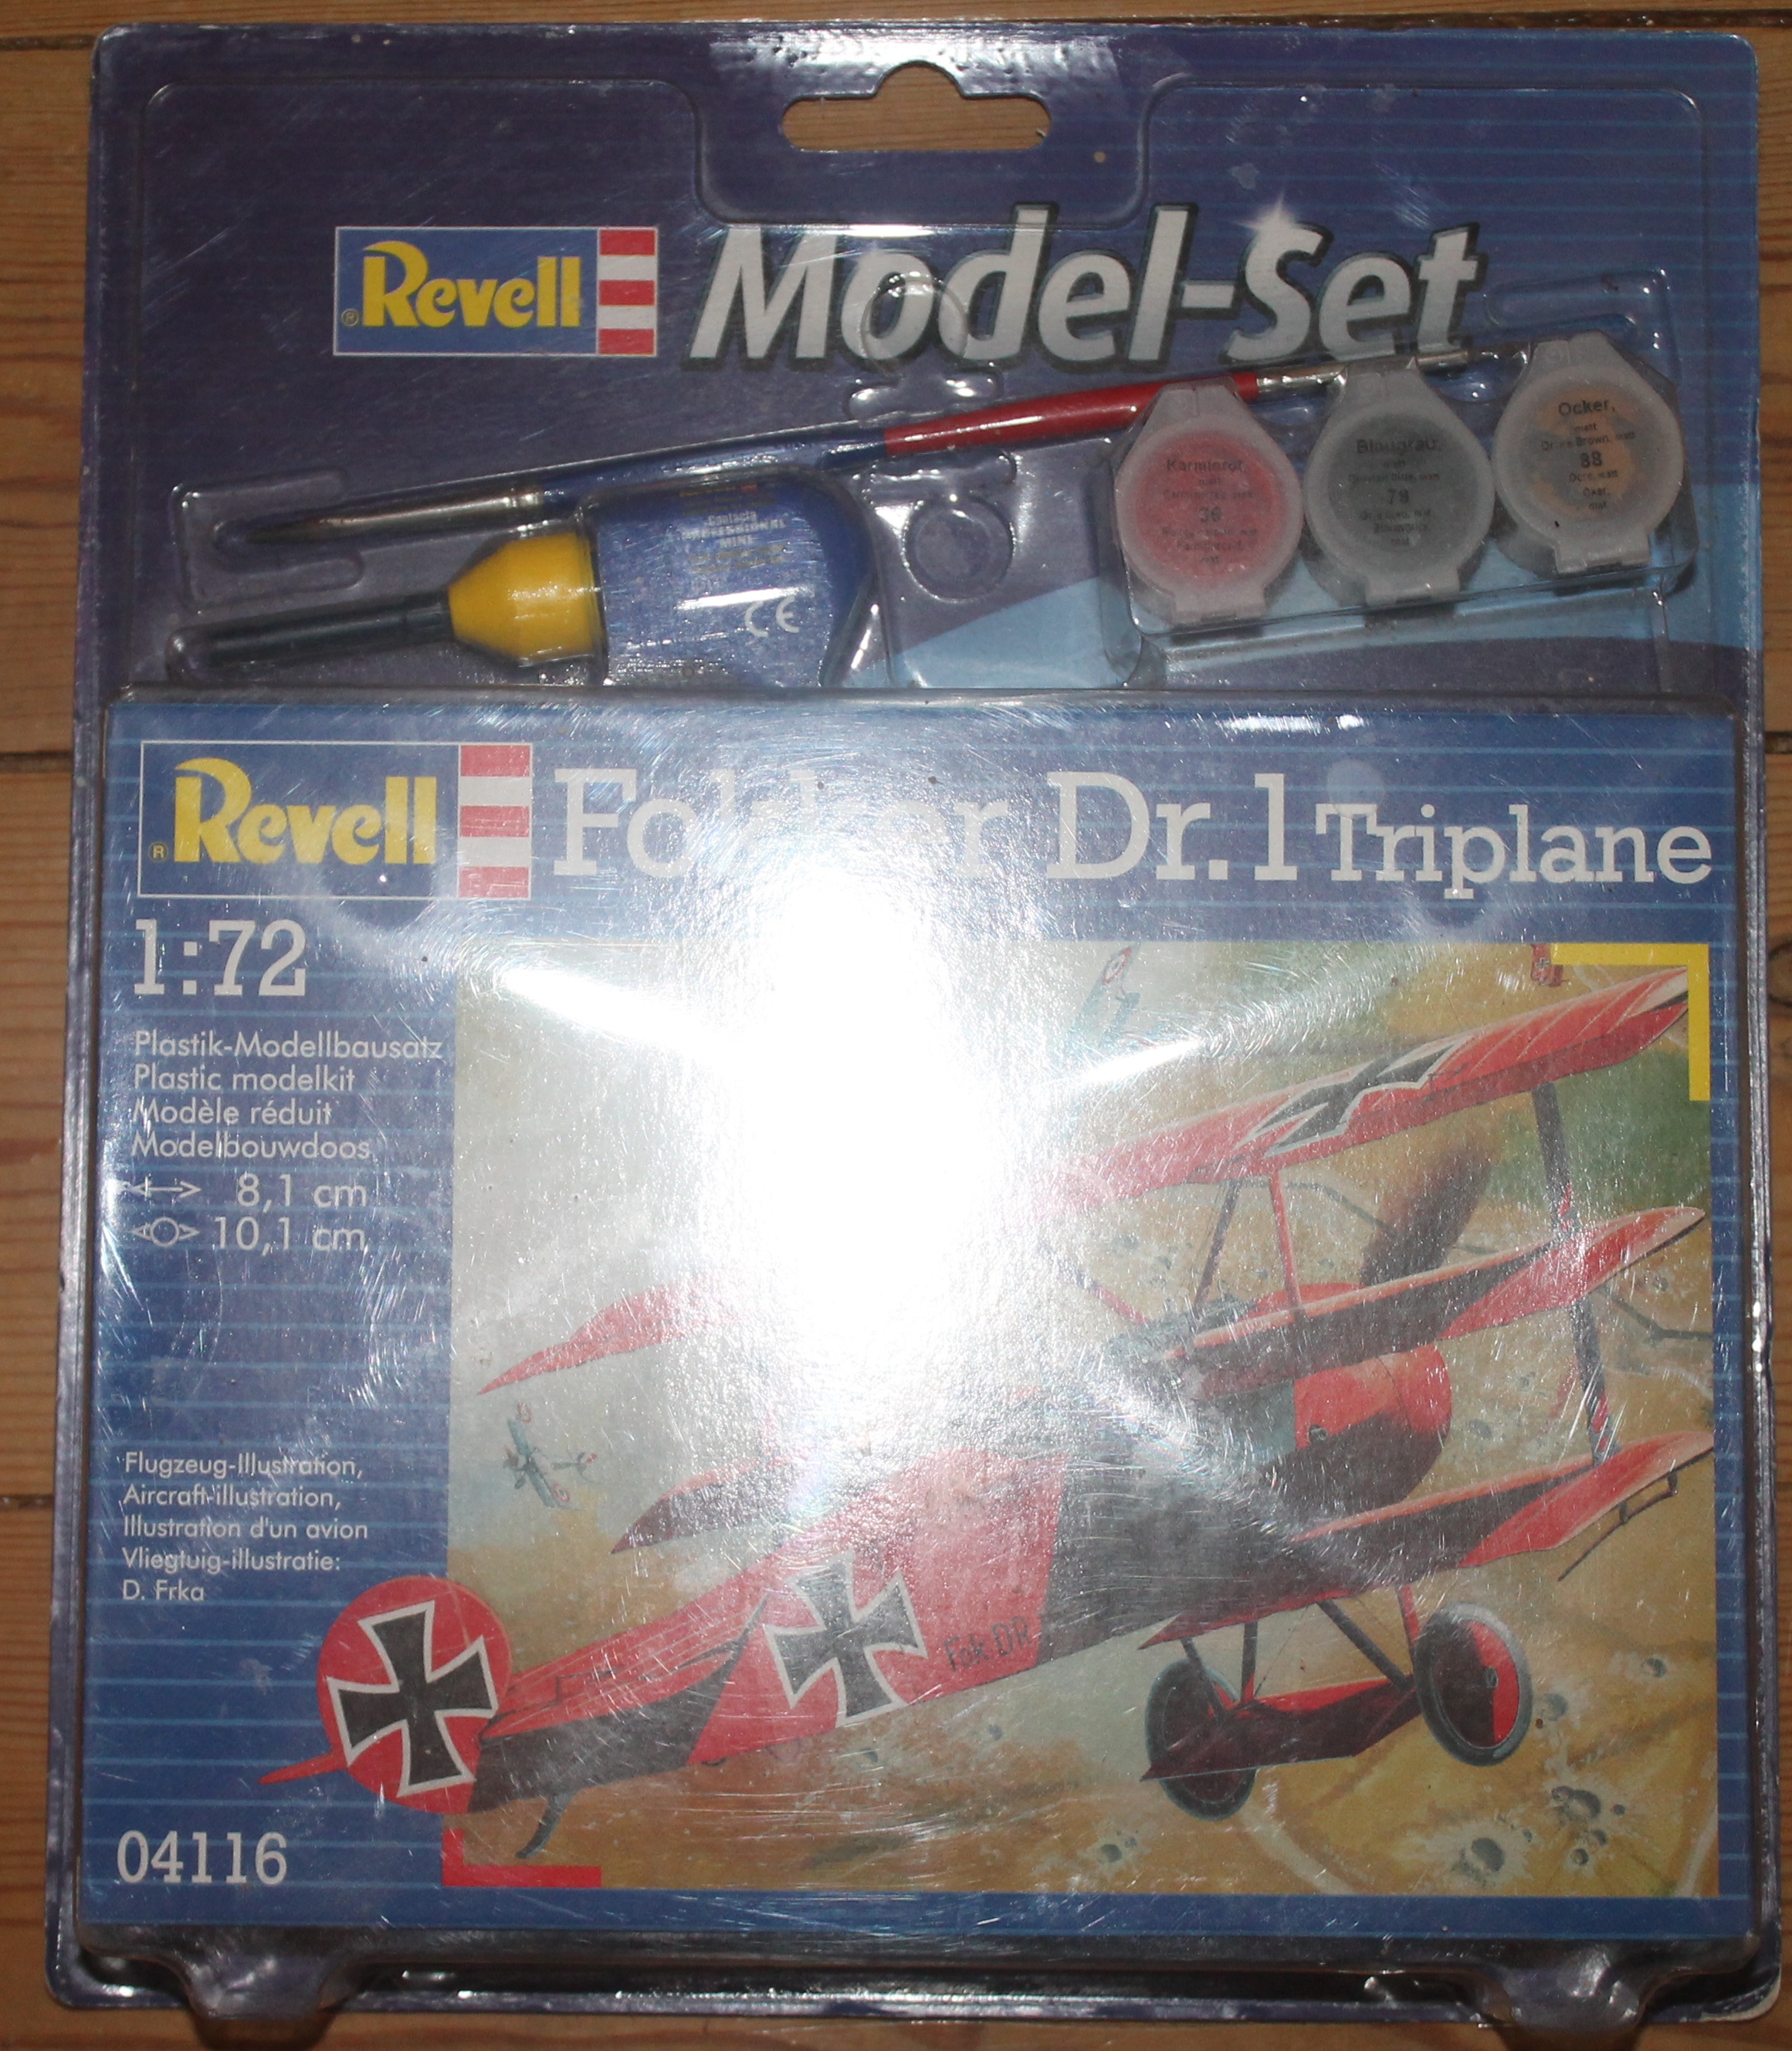 Revel fly model